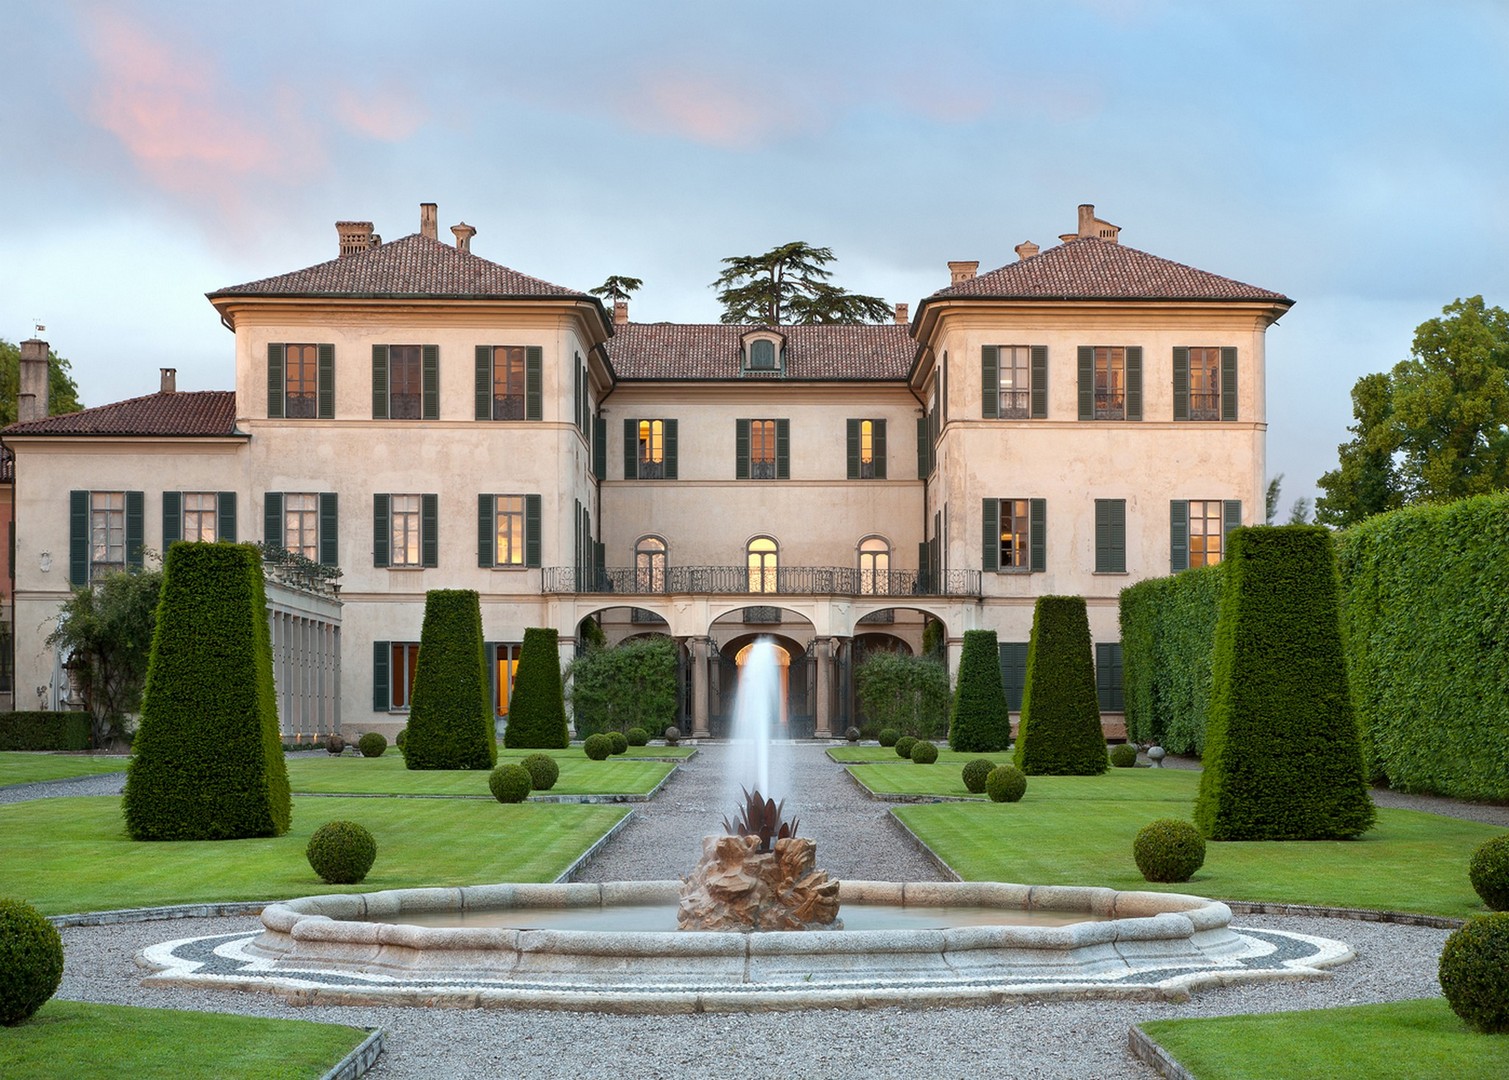 Villa Panza, Varese Foto di arenaimmagini.it,2013 © FAI - Fondo per l'Ambiente Italiano